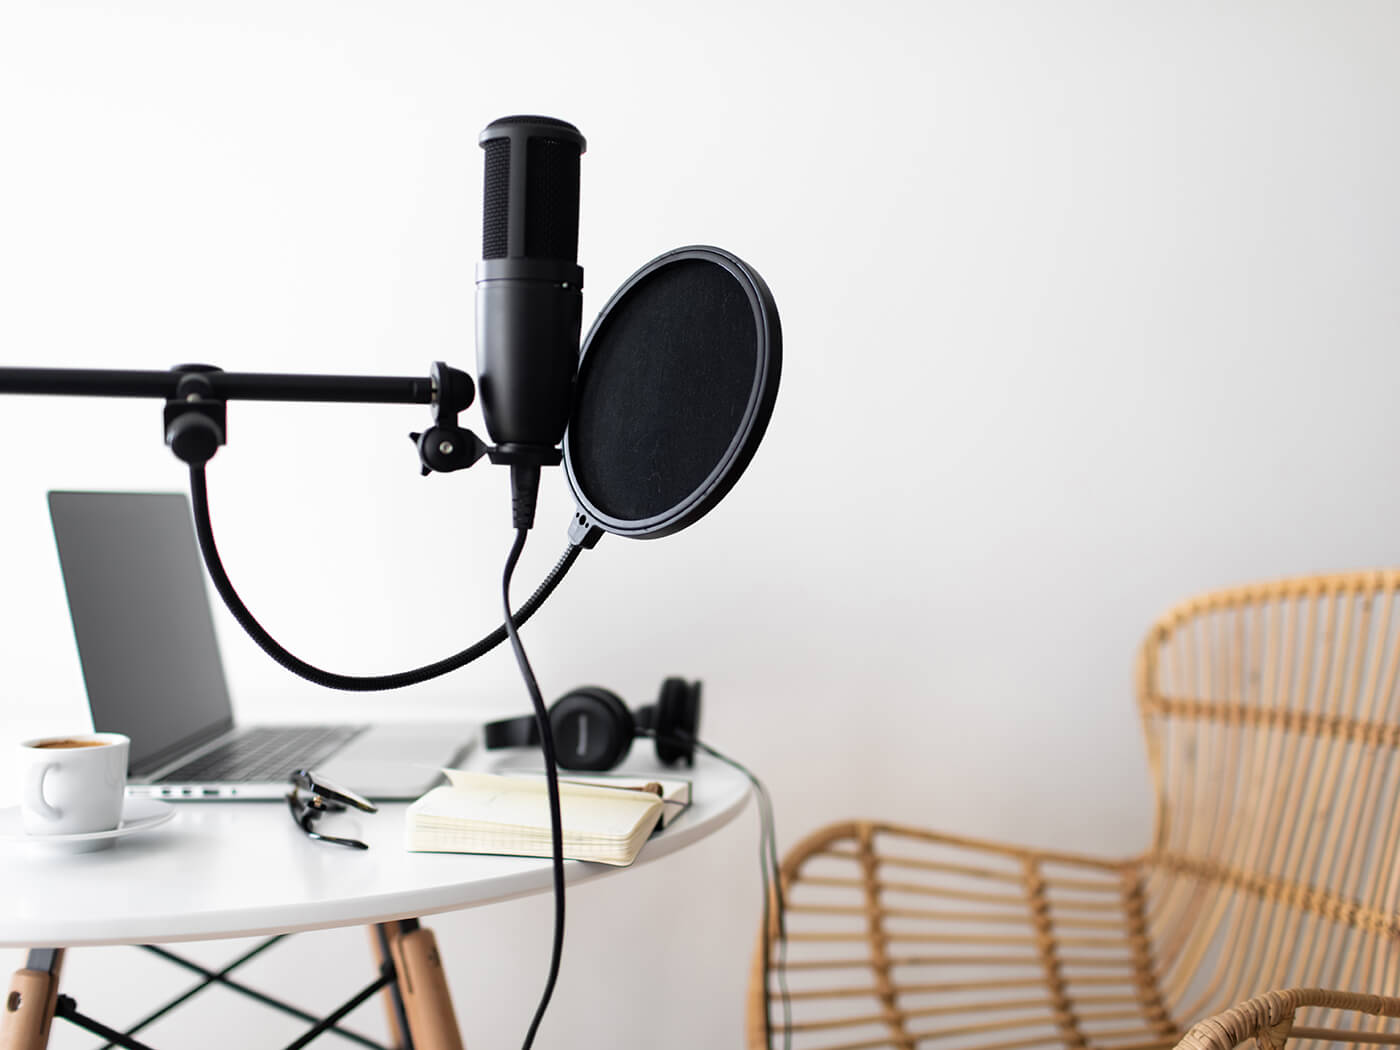 Podcast Recording Setup